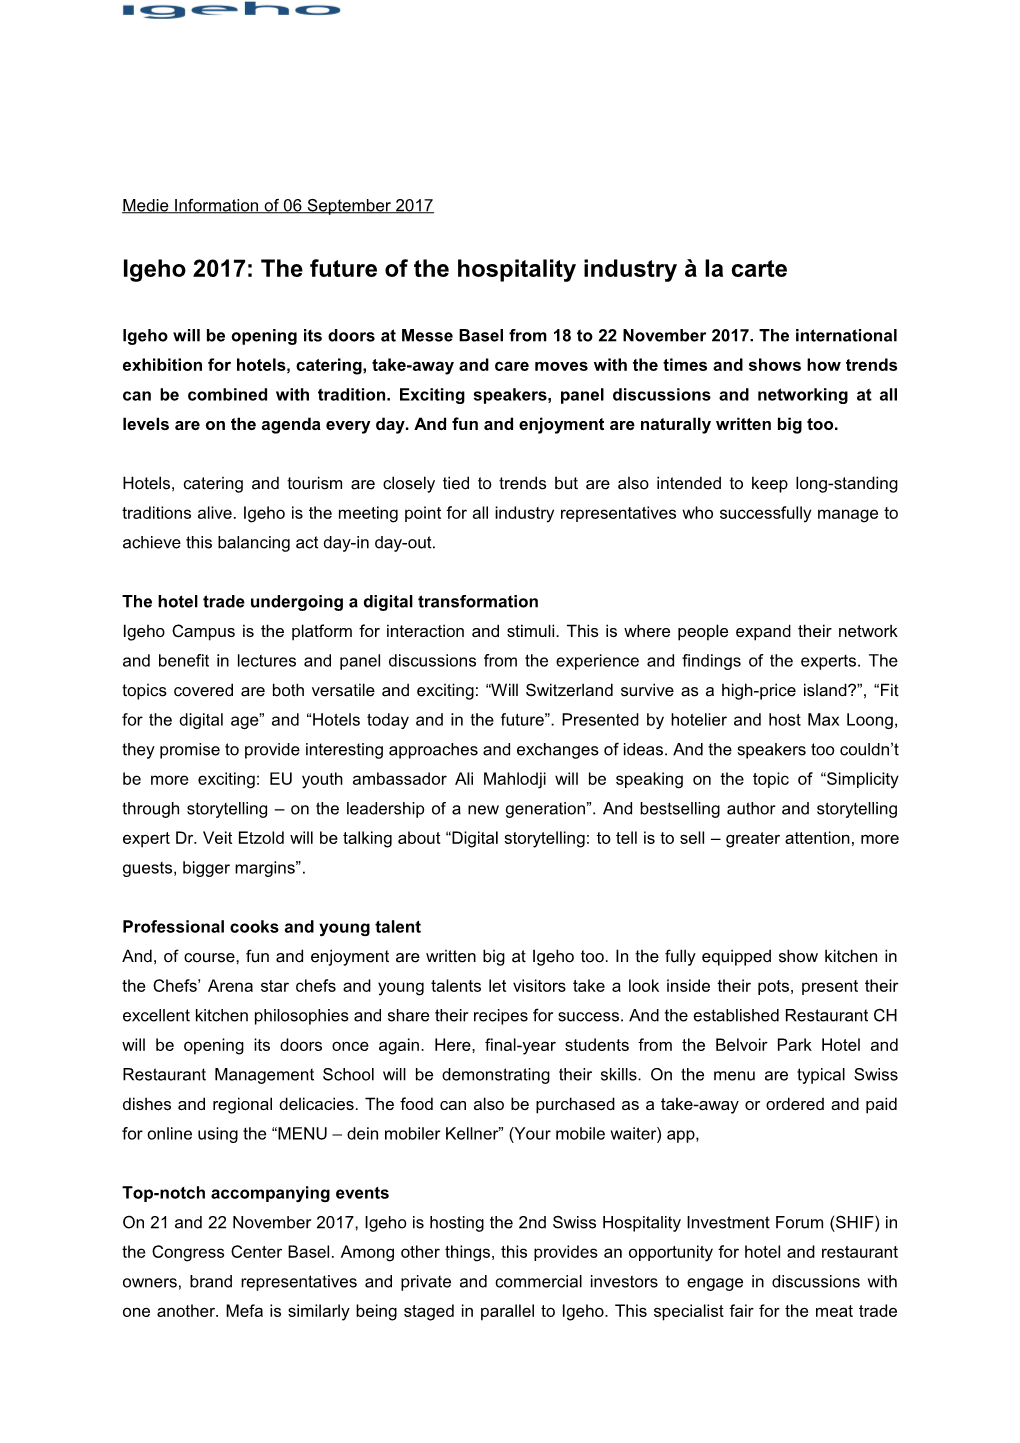 Igeho 2017: the Future of the Hospitality Industry À La Carte